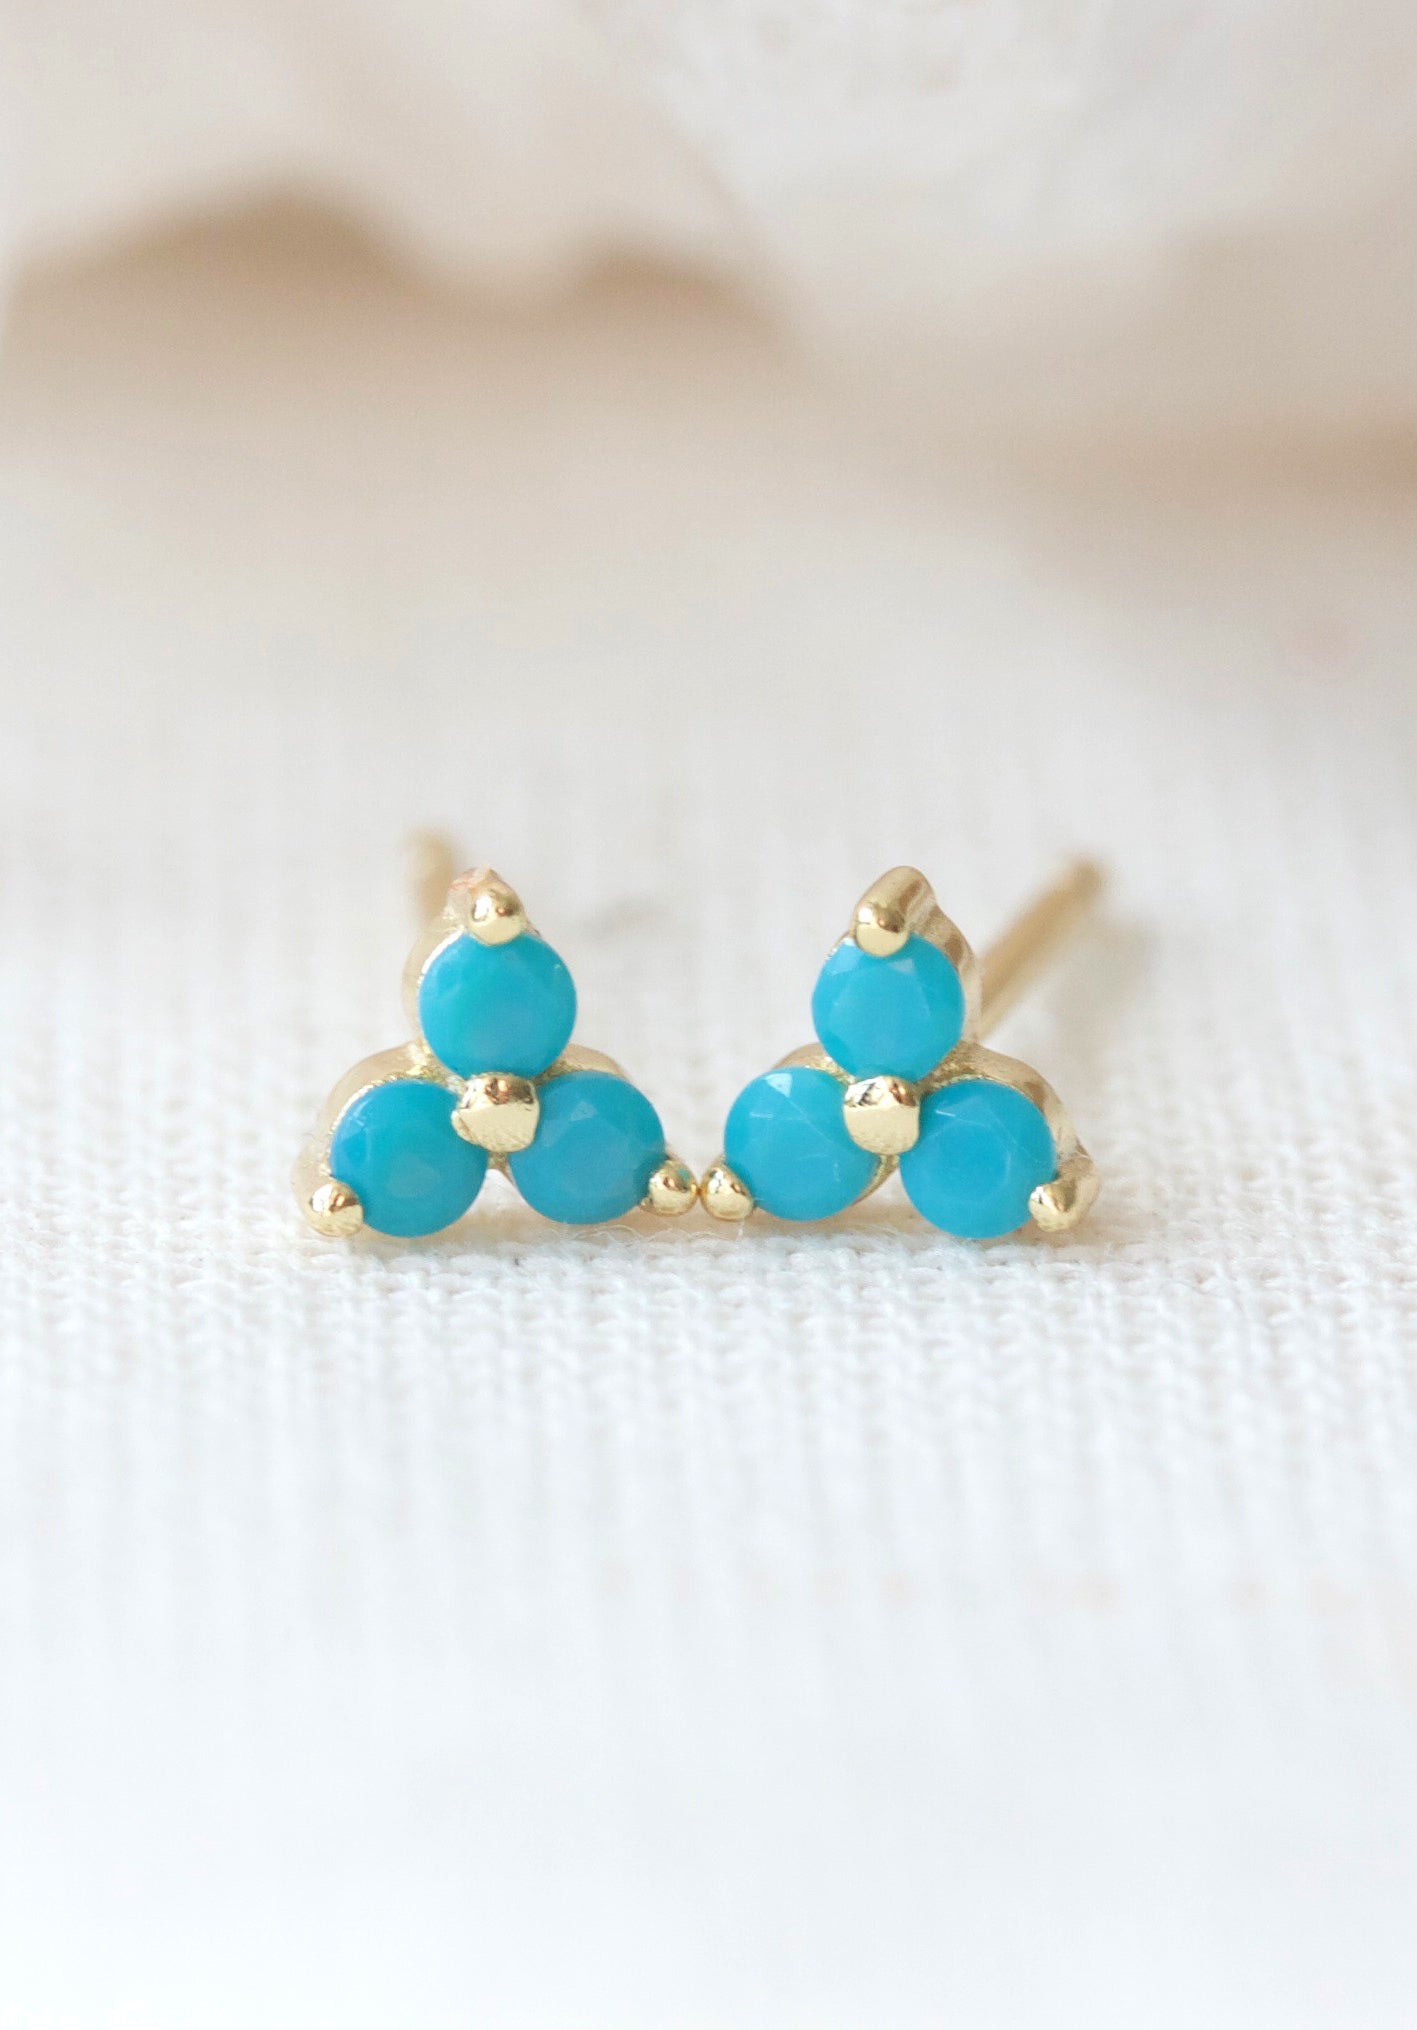 December Turquoise Birthstone Stud Earrings